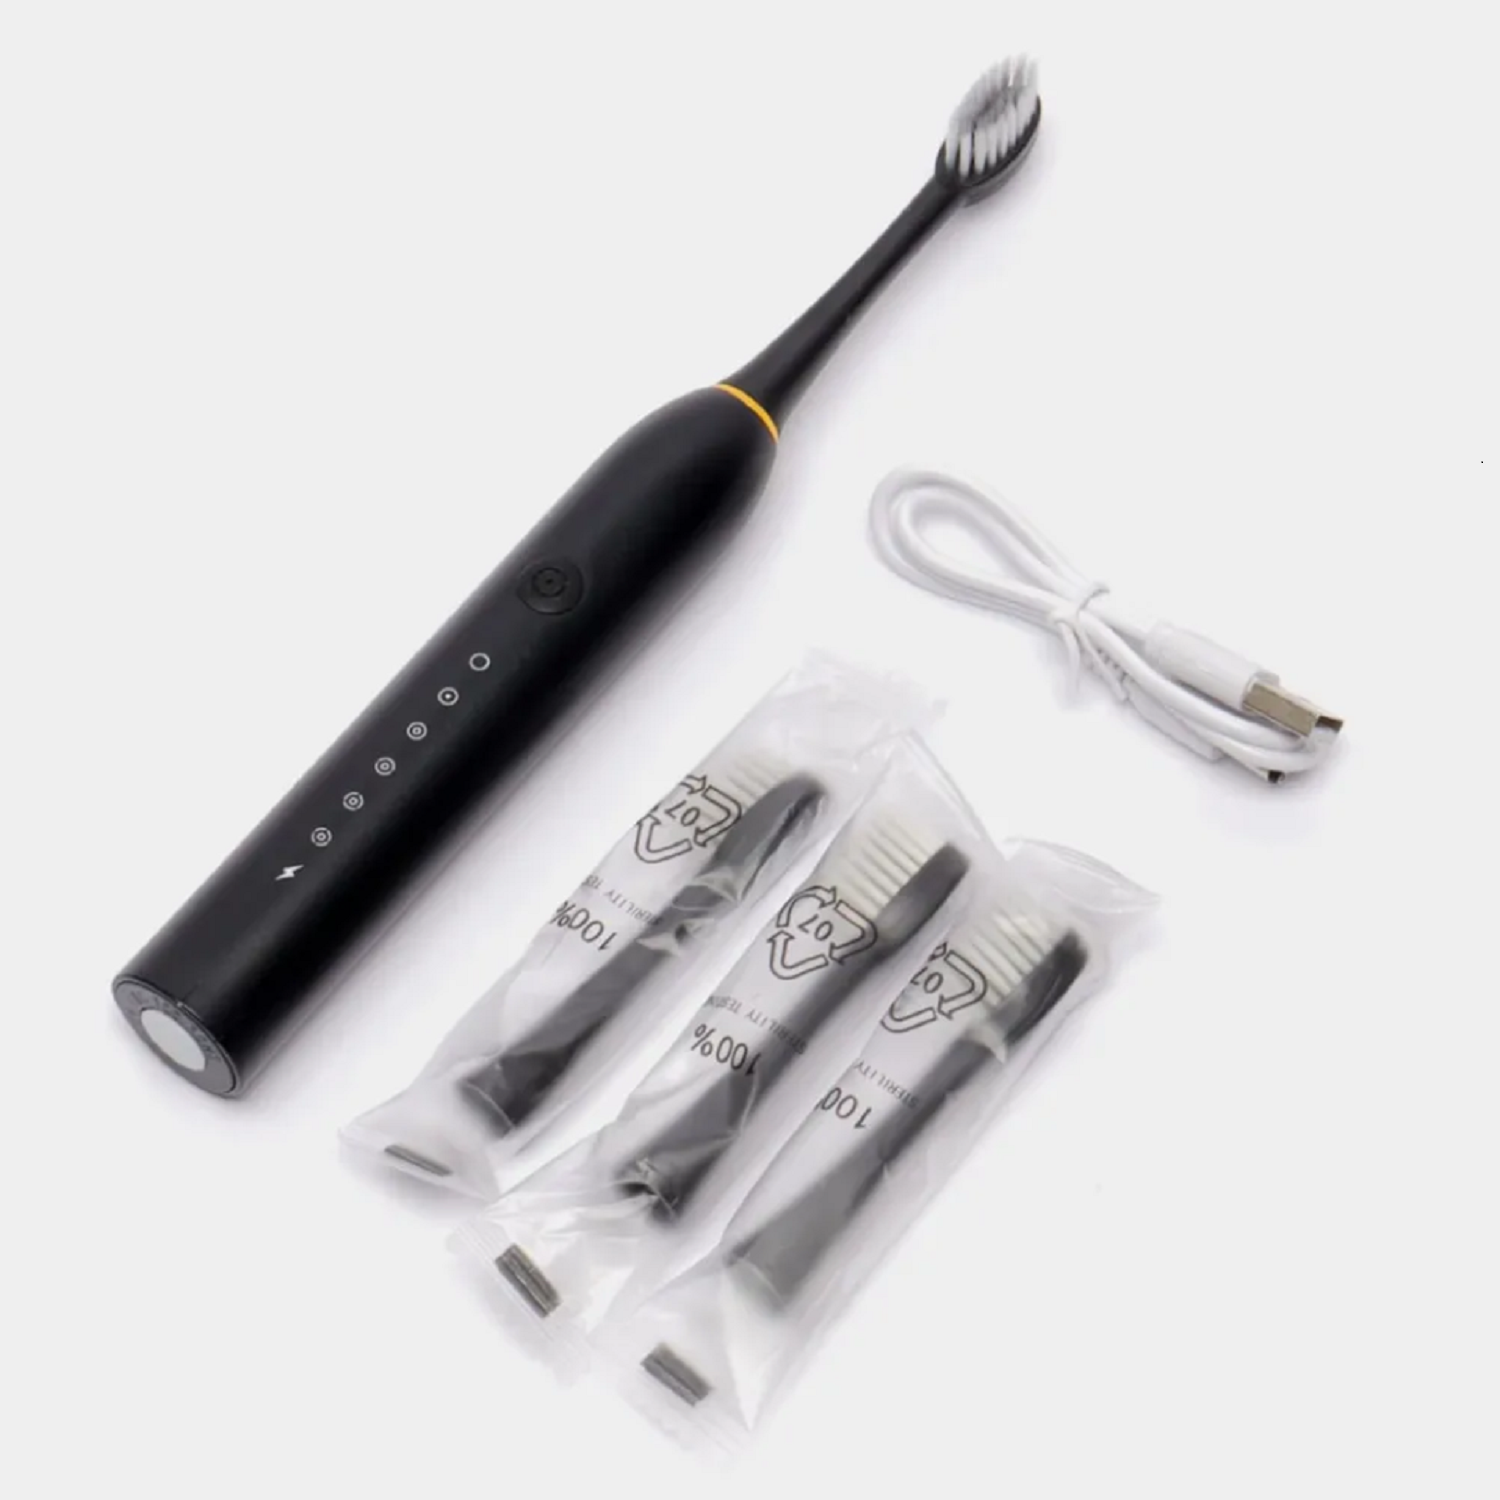 УЗ электрическая зубная щетка с таймером 4*30 сек влагозащита IPX7 6 режимов 4 насадки 30 дней на 1й зарядке